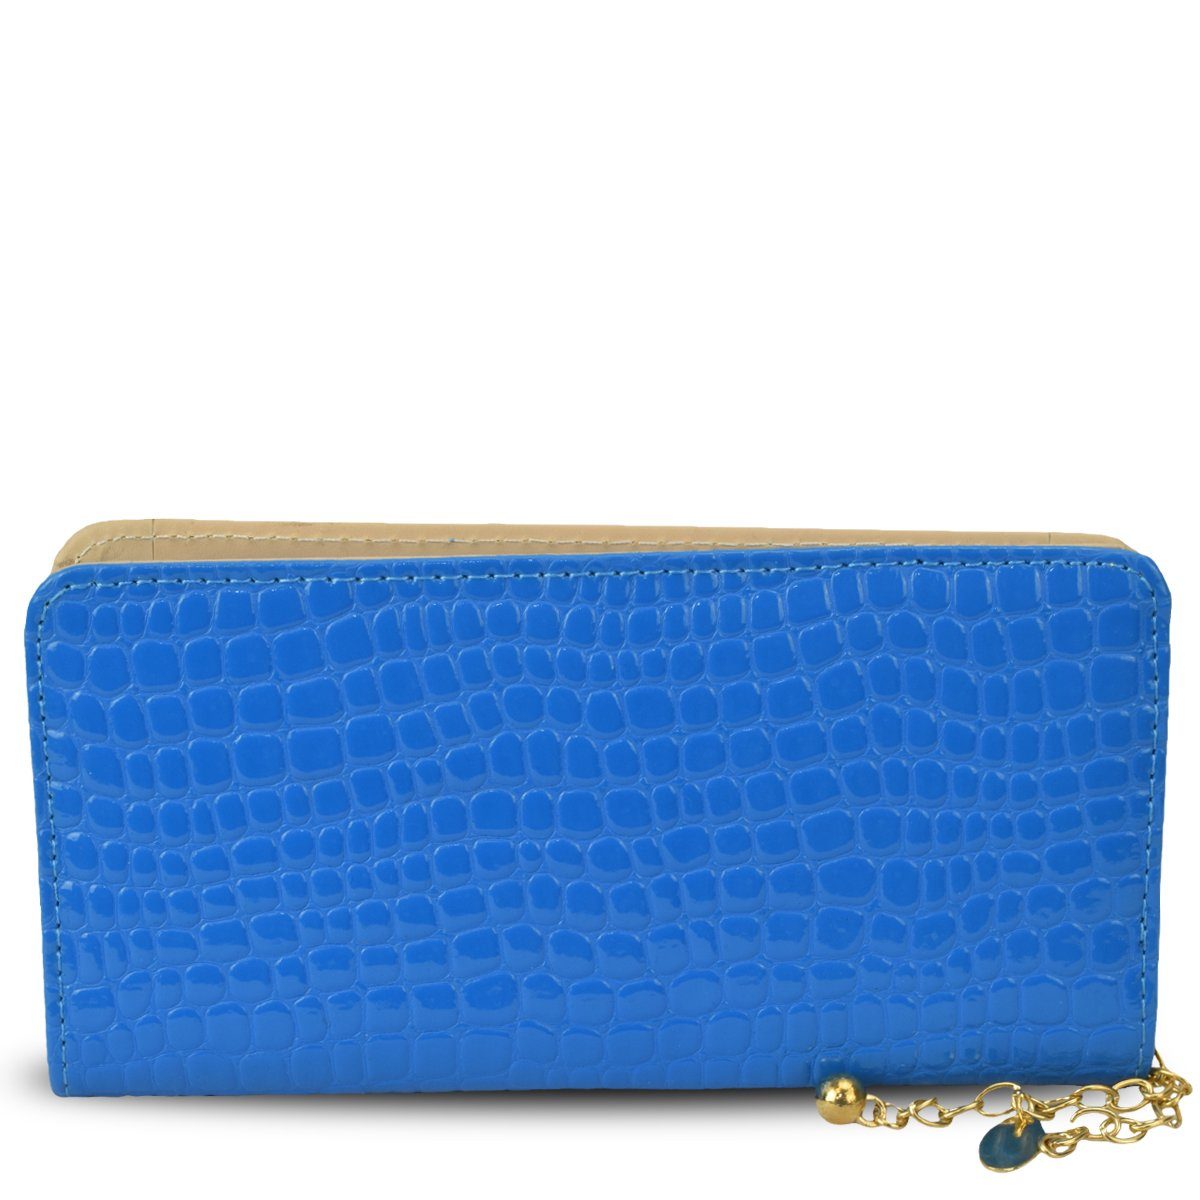 Sonia Originelli Umhängetasche Portemonnaie Clutch Lackoptik glänzend, Reißverschluss blau